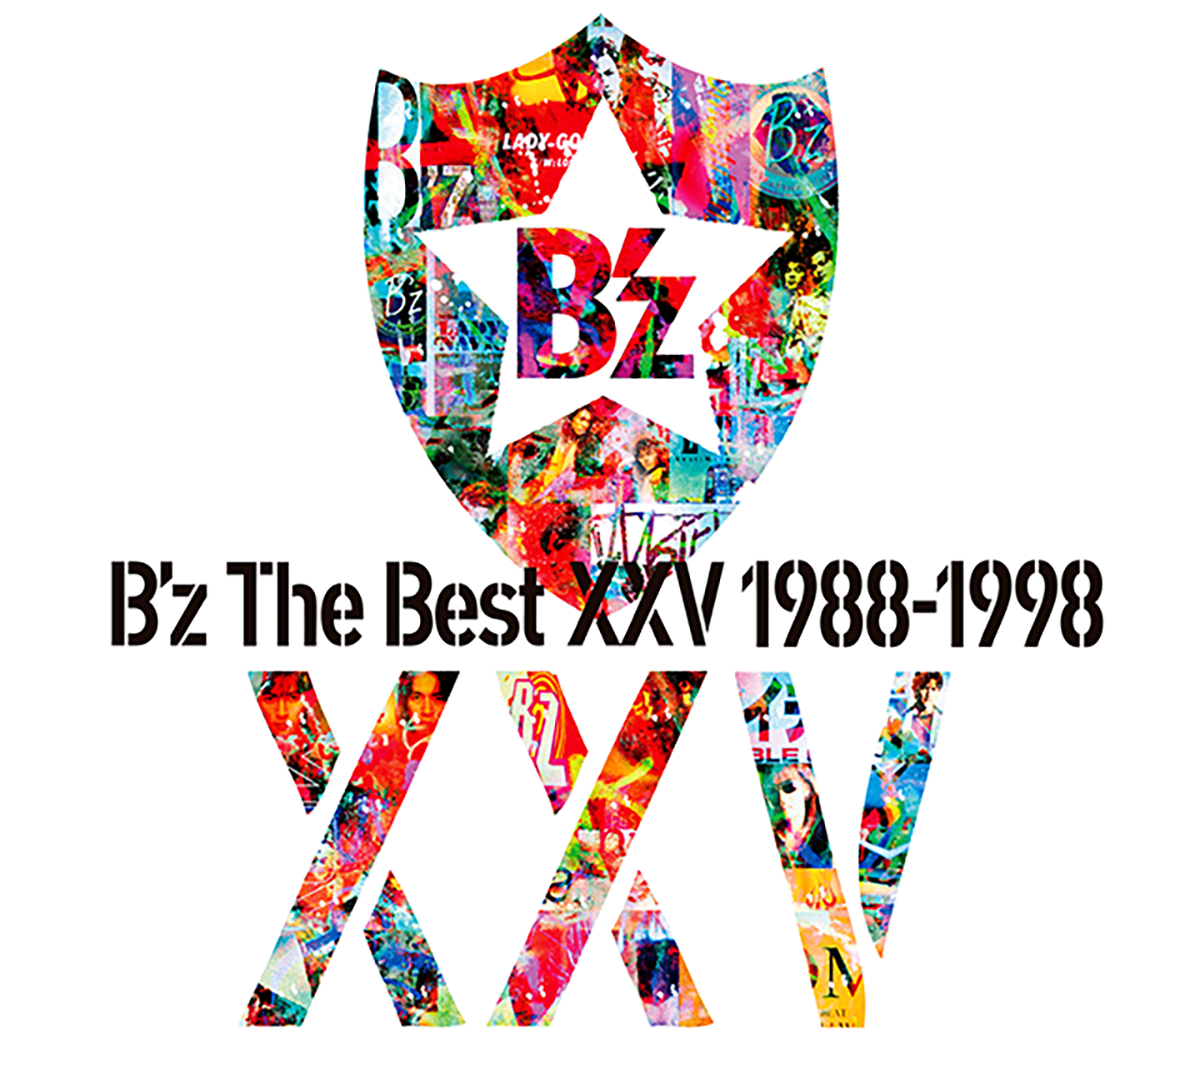 『B'z The Best XXV 1988-1998』のジャケット画像